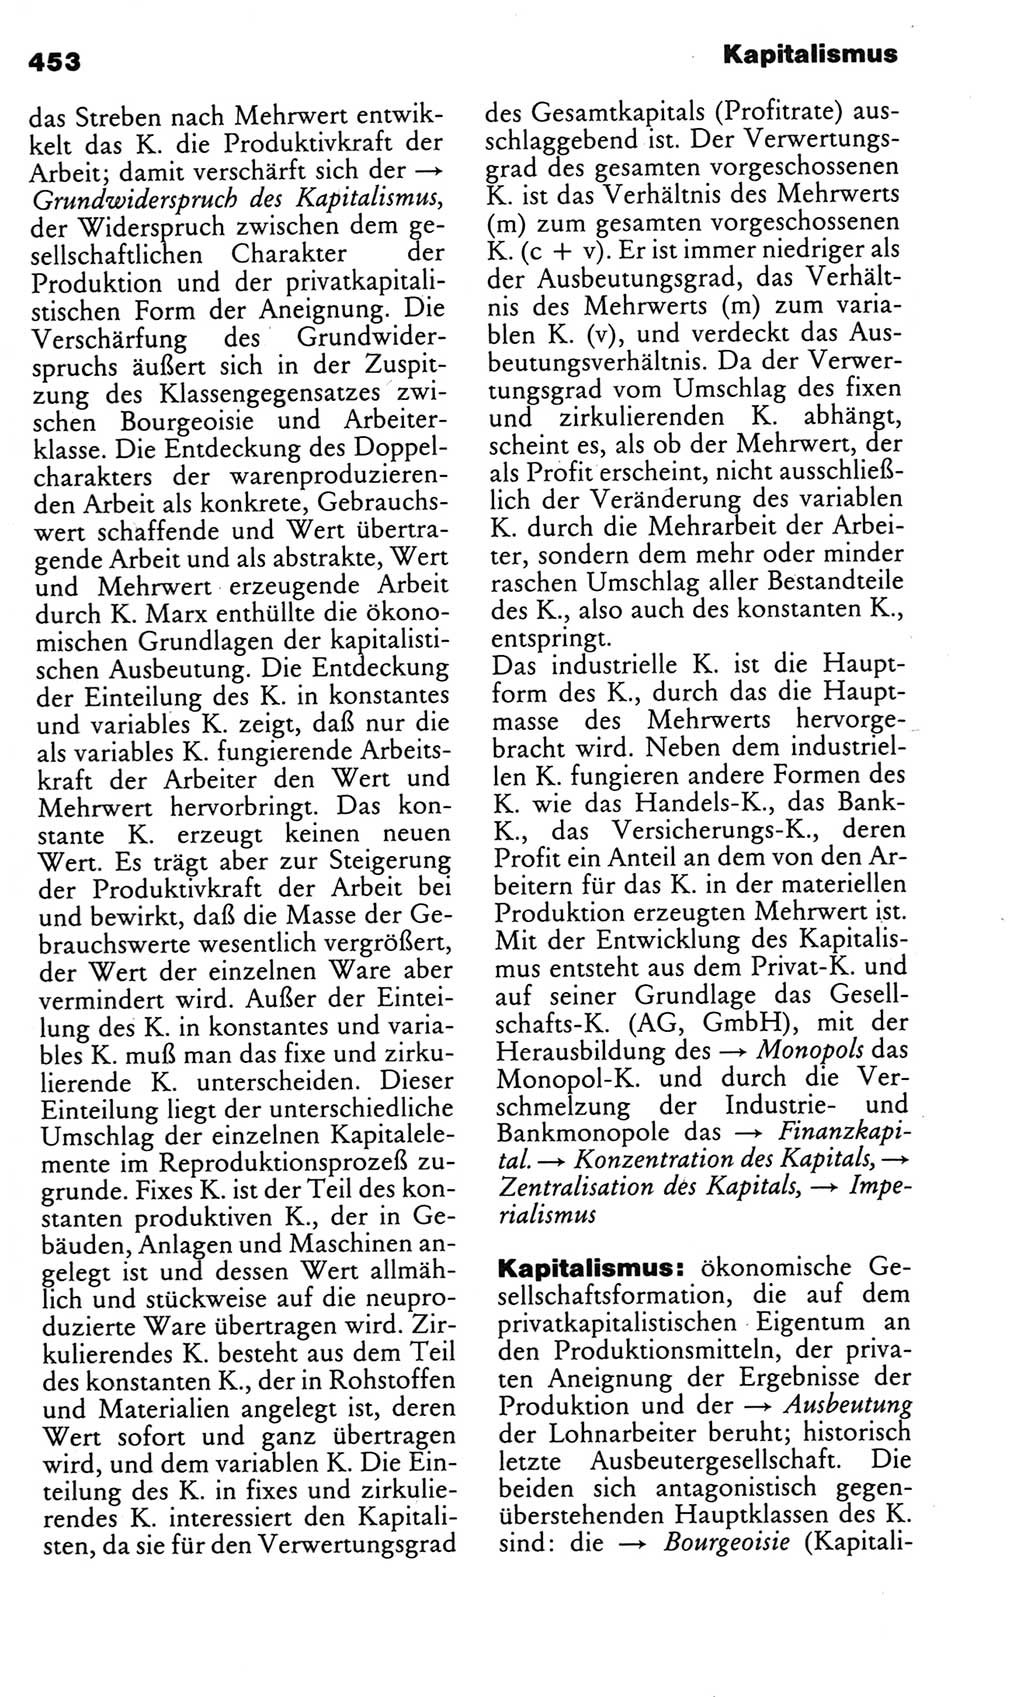 Kleines politisches Wörterbuch [Deutsche Demokratische Republik (DDR)] 1983, Seite 453 (Kl. pol. Wb. DDR 1983, S. 453)